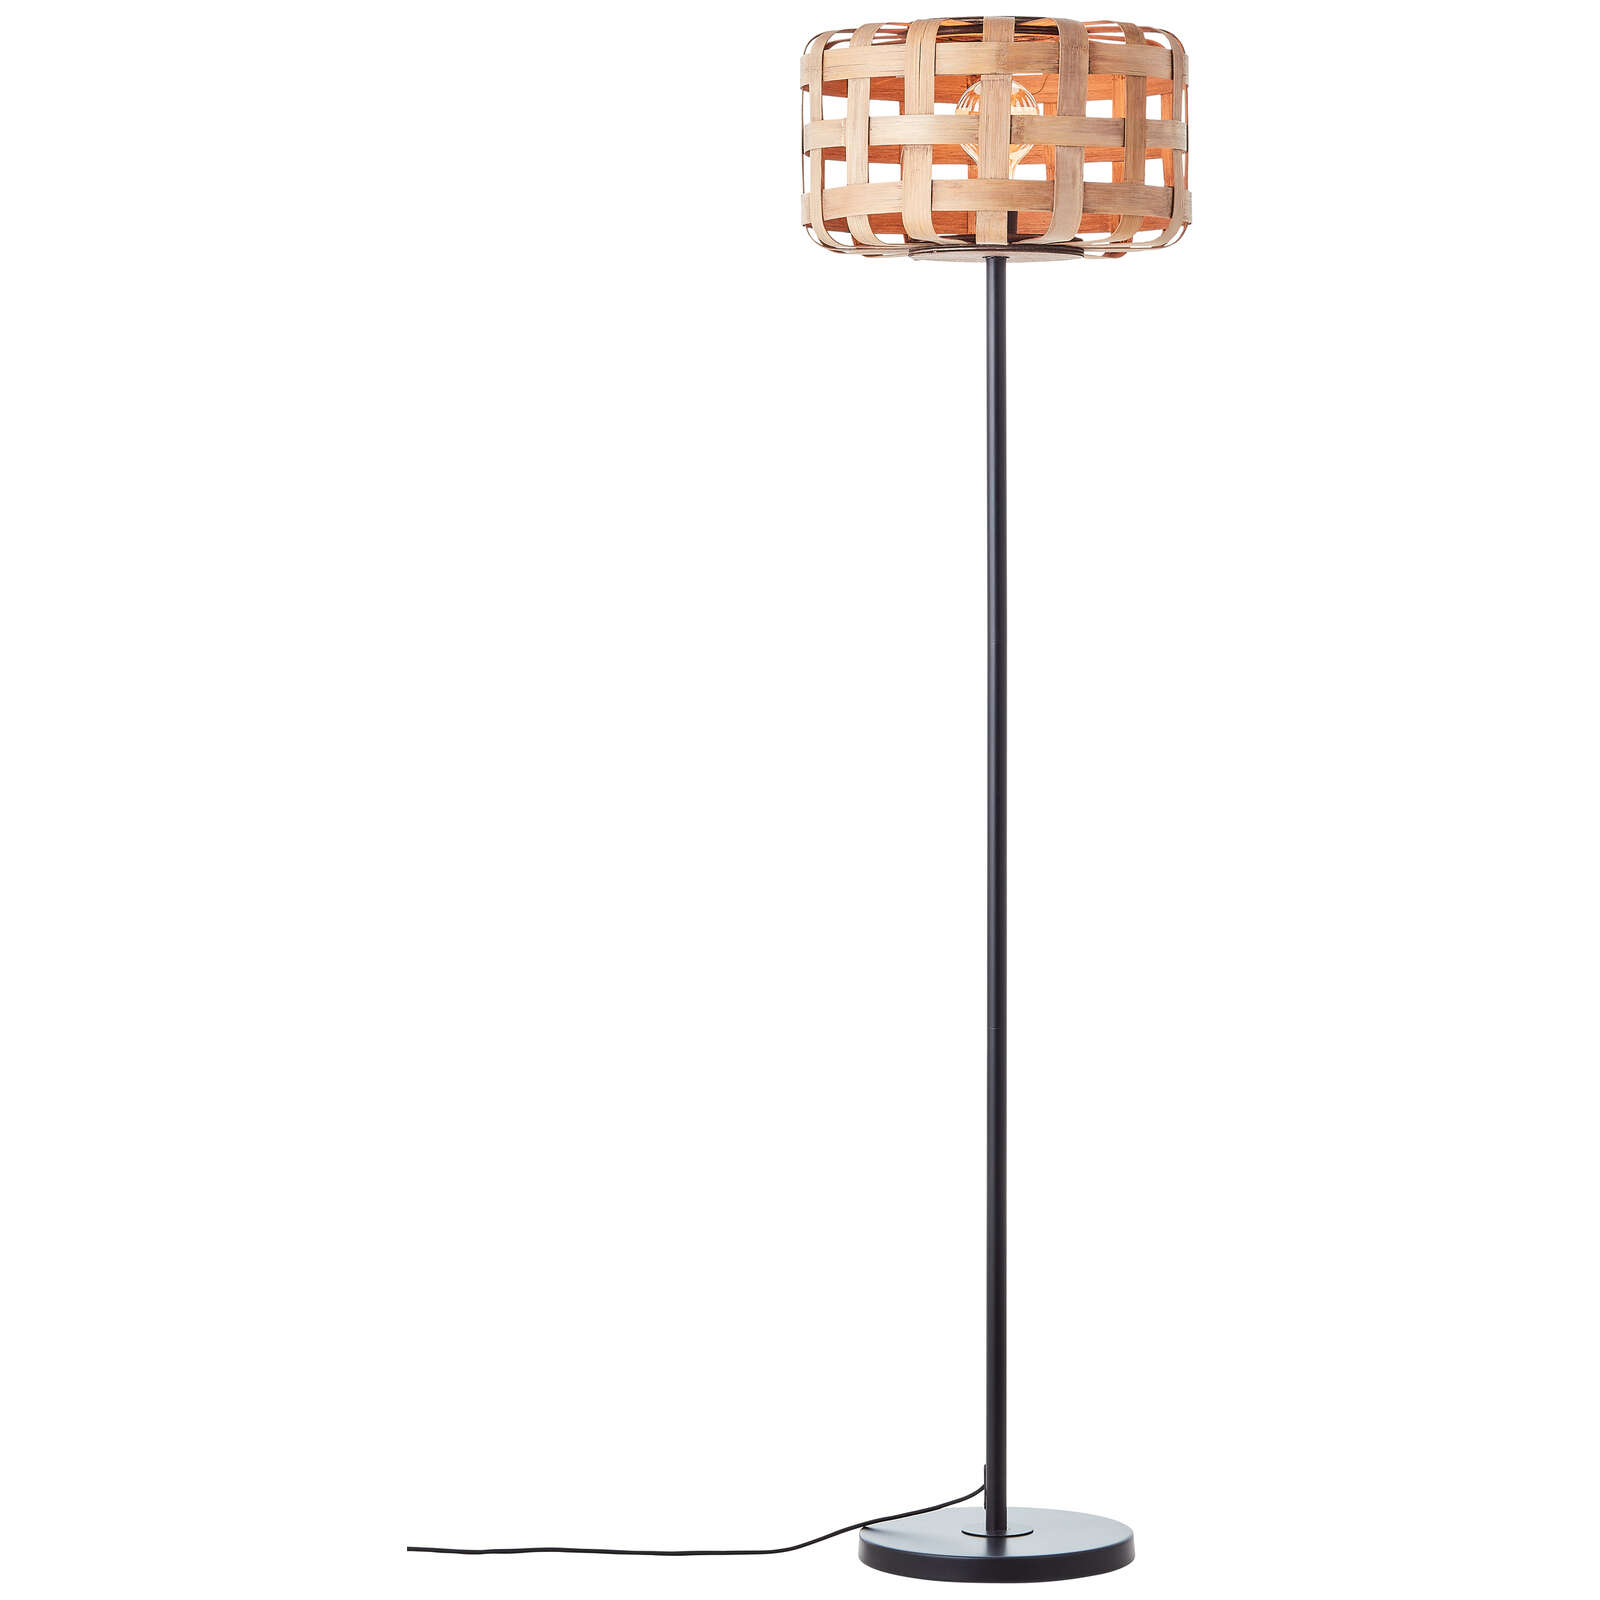             Metalen vloerlamp - Wilhelm 5 - Bruin
        